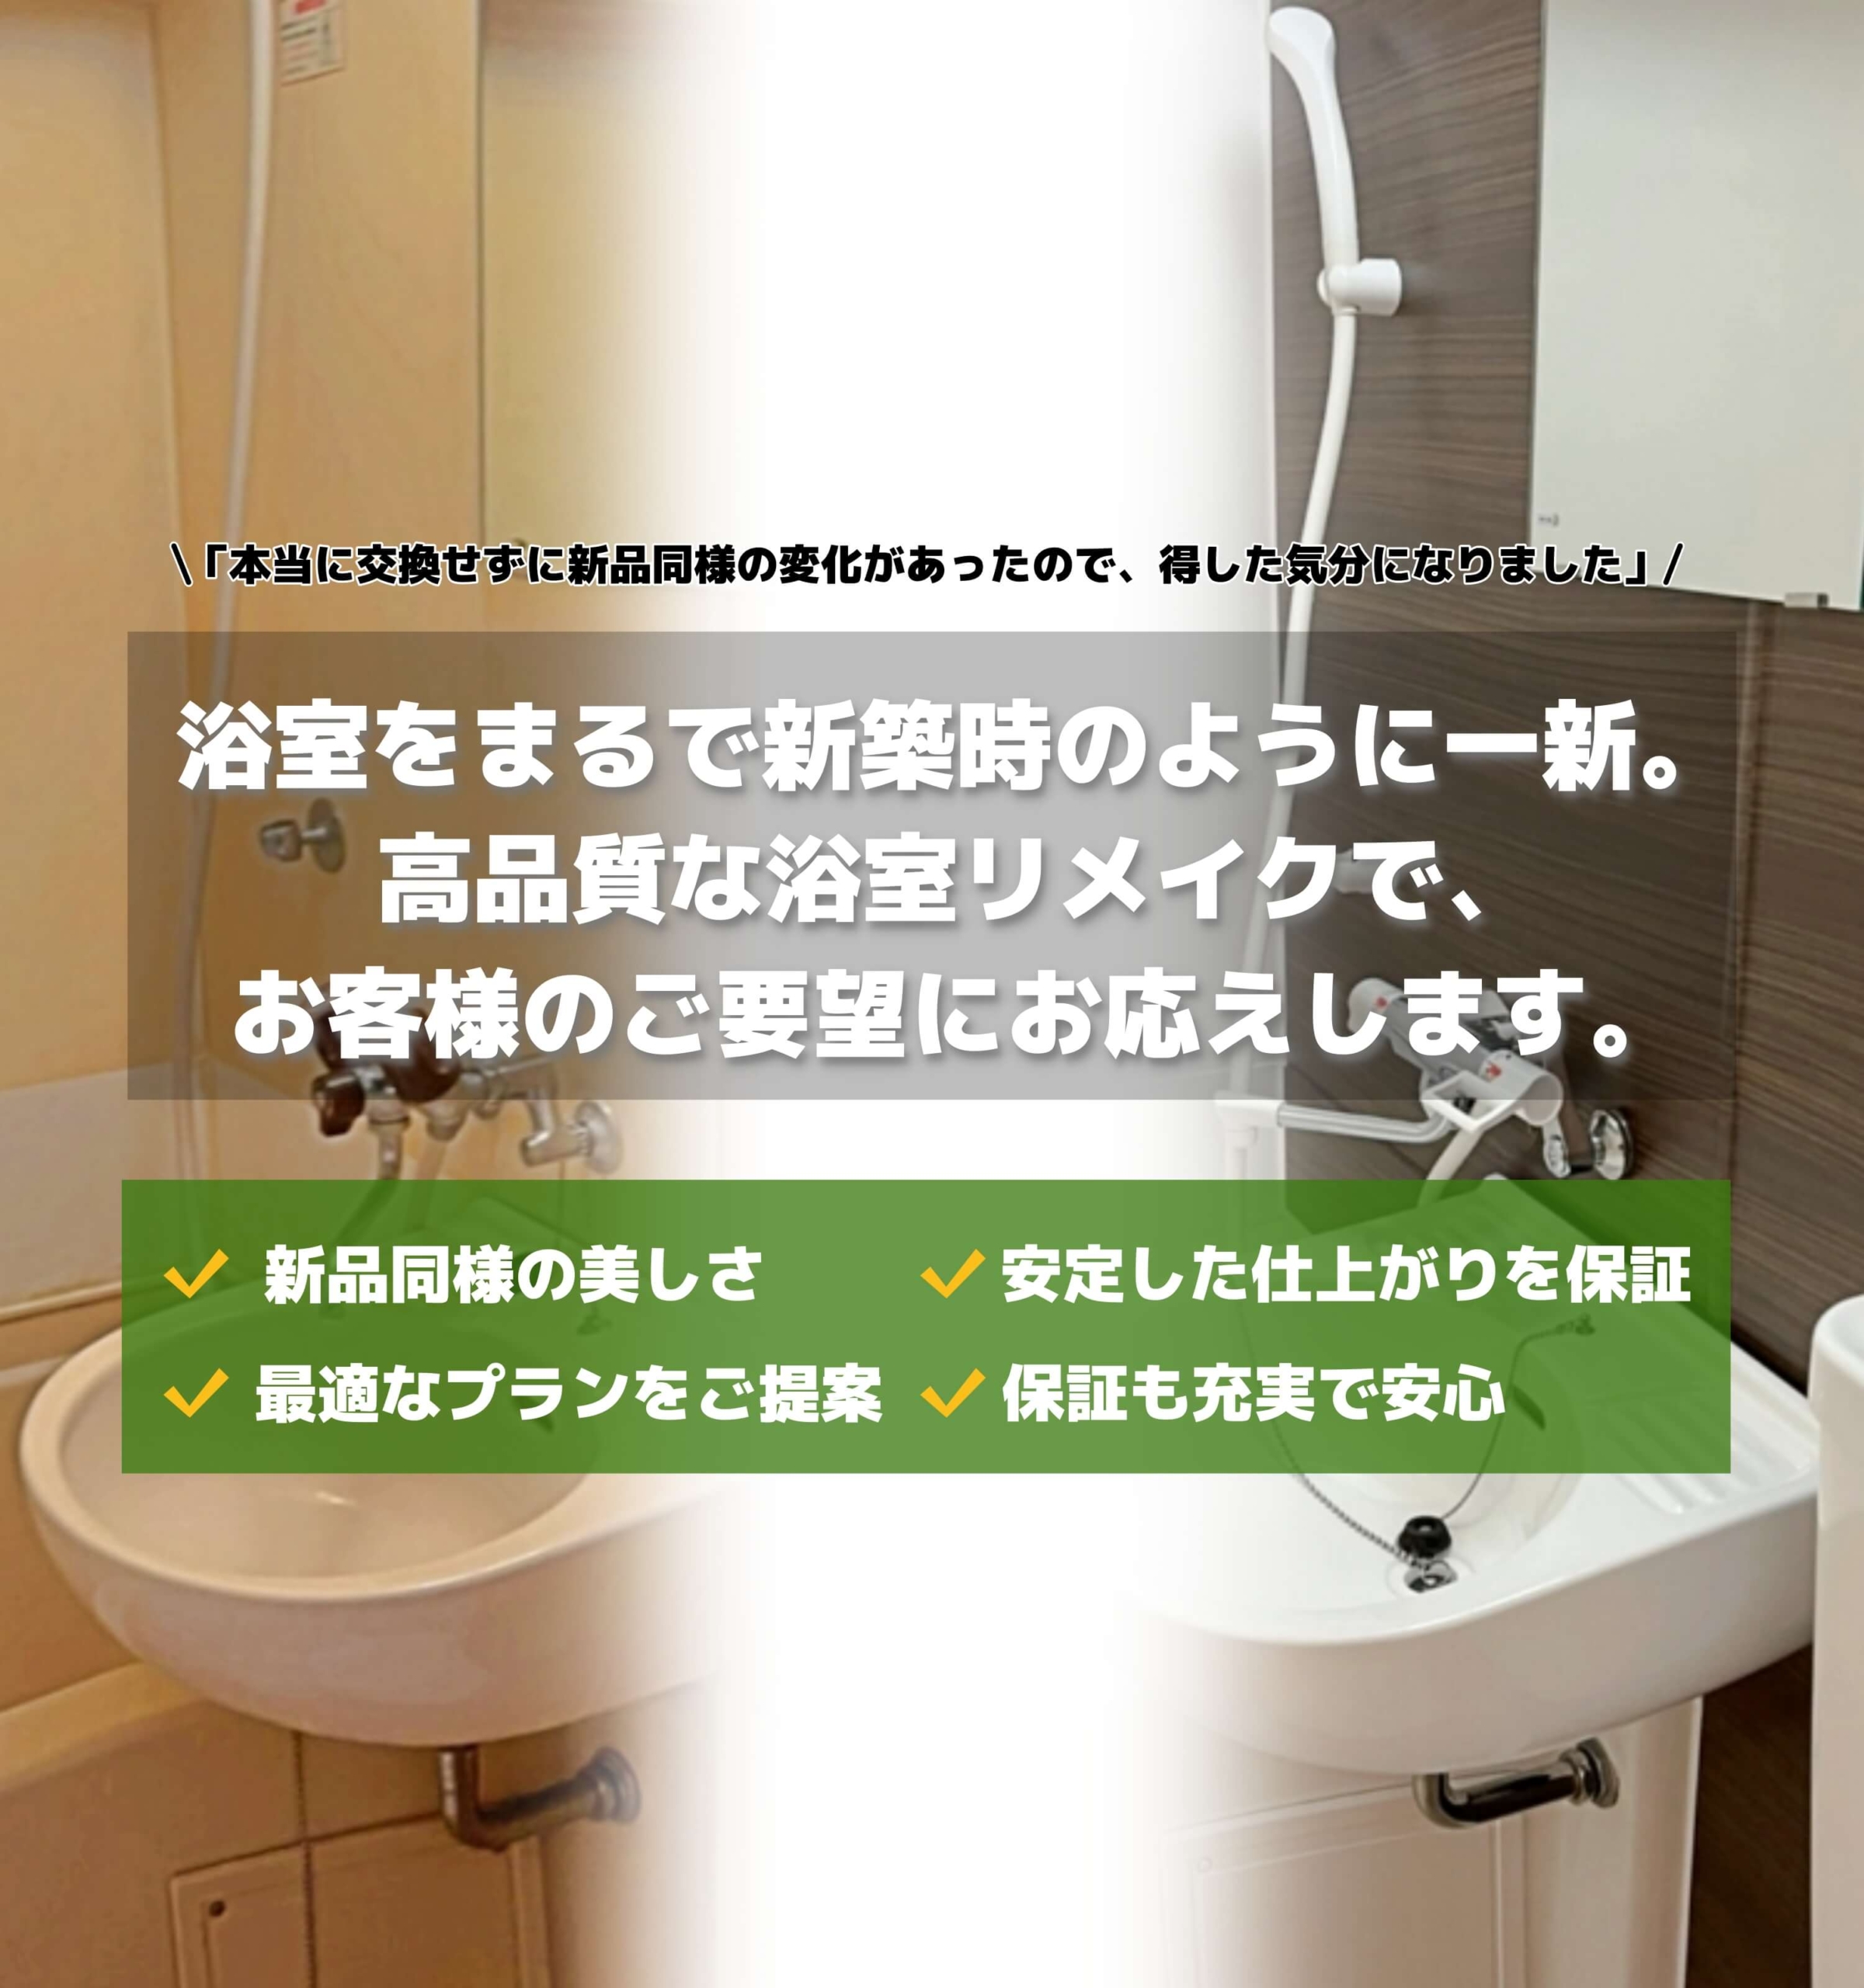 ko-rectはお手軽な価格で新品同様に浴室をリメイクします。